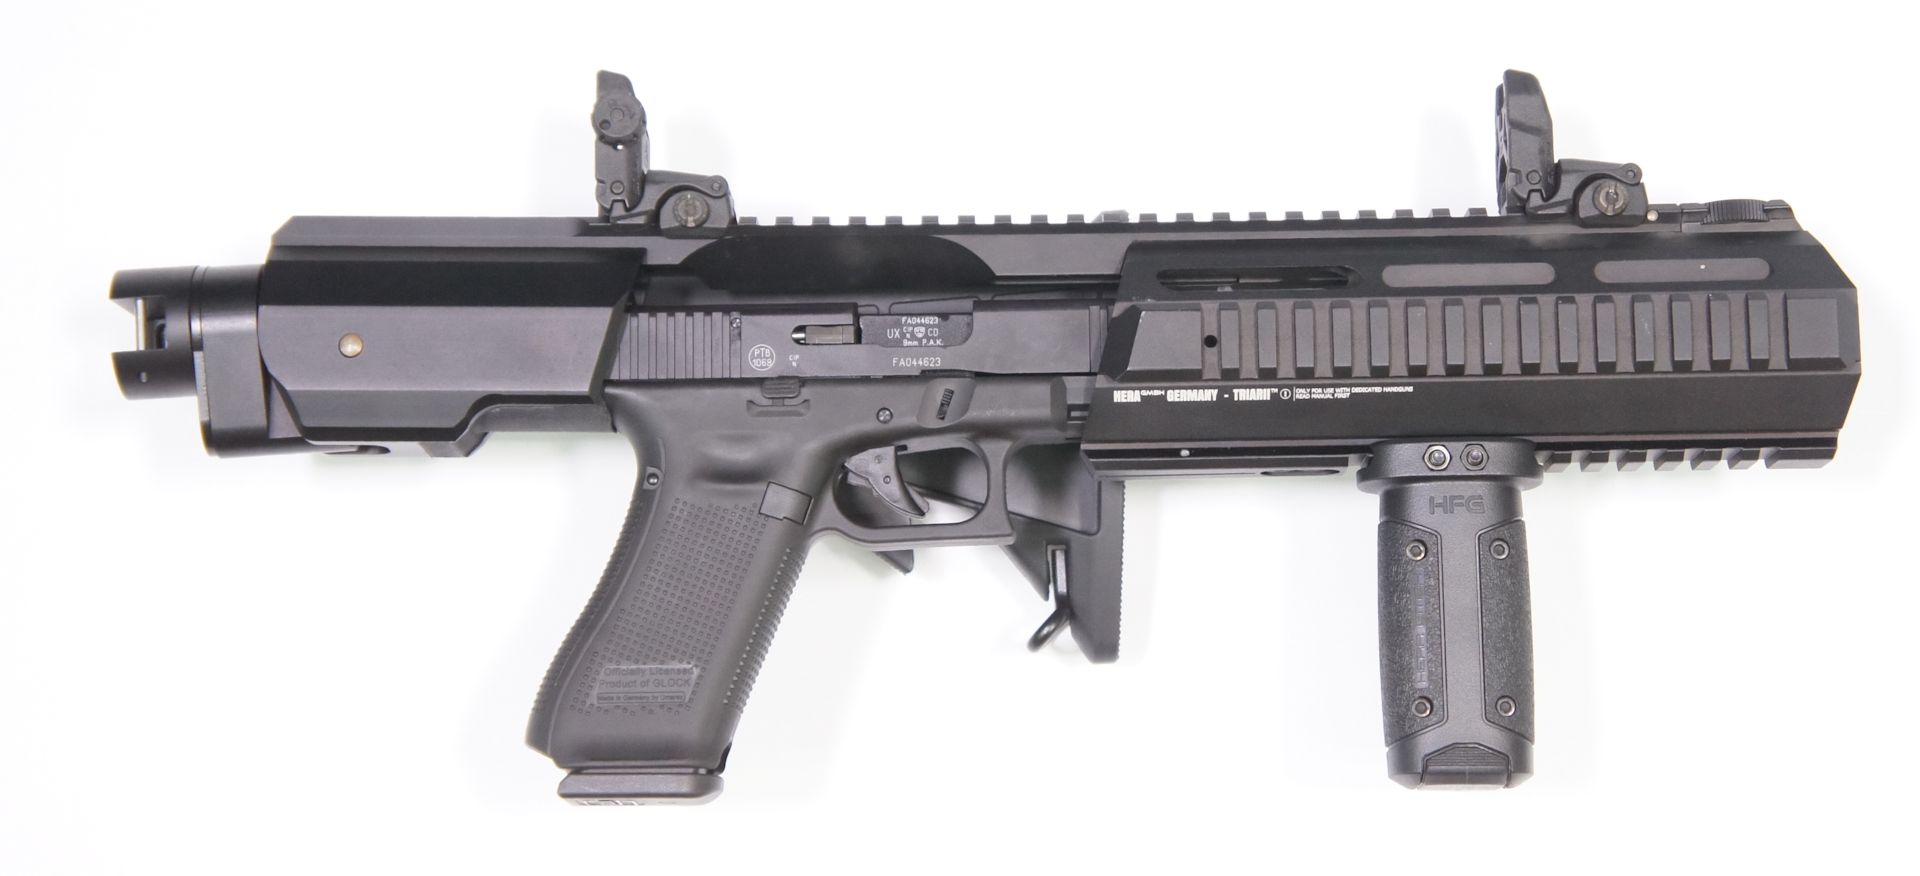 Montagebeispiel vom HERA Arms Anschlagschaft mit Glock 17 Gen. 5, Visierung und Klappschaftadapter